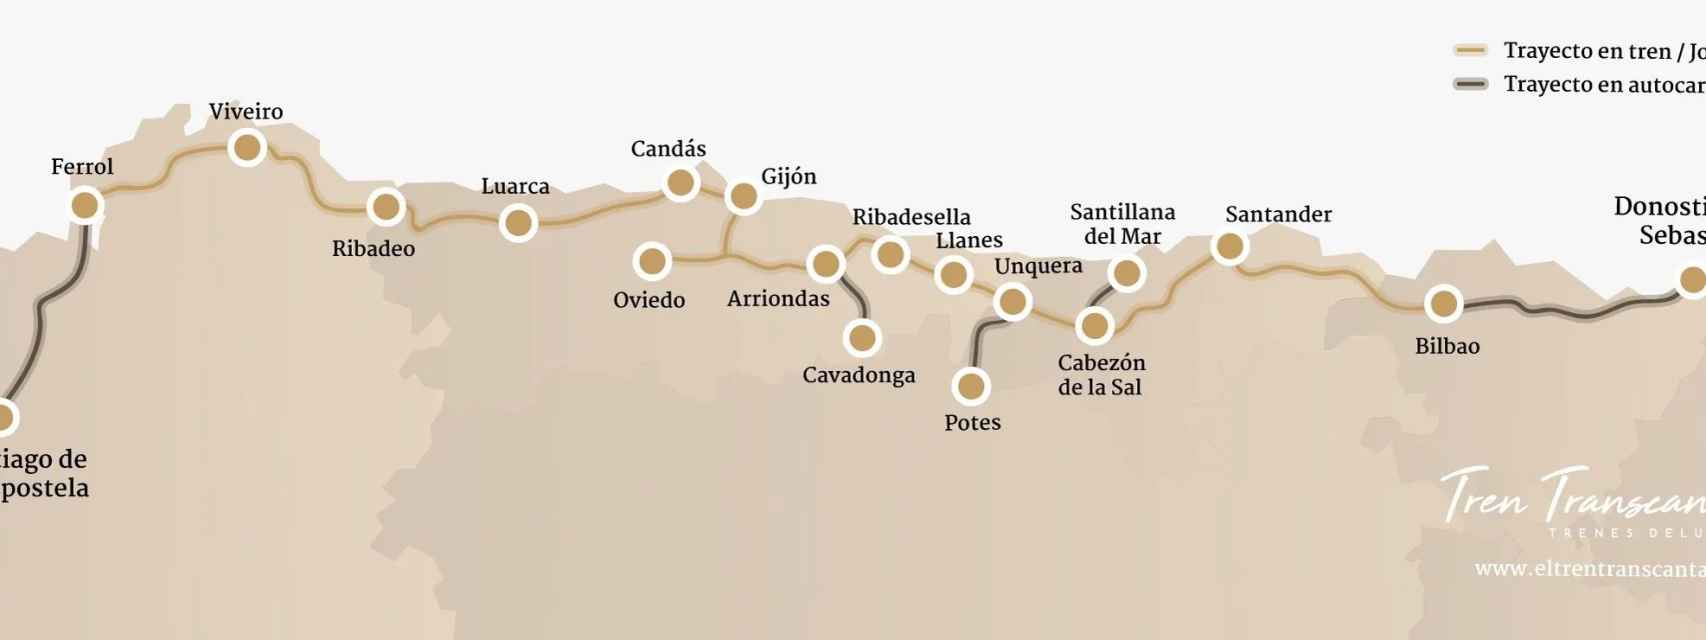 Itinerario / Web Transcantábrico